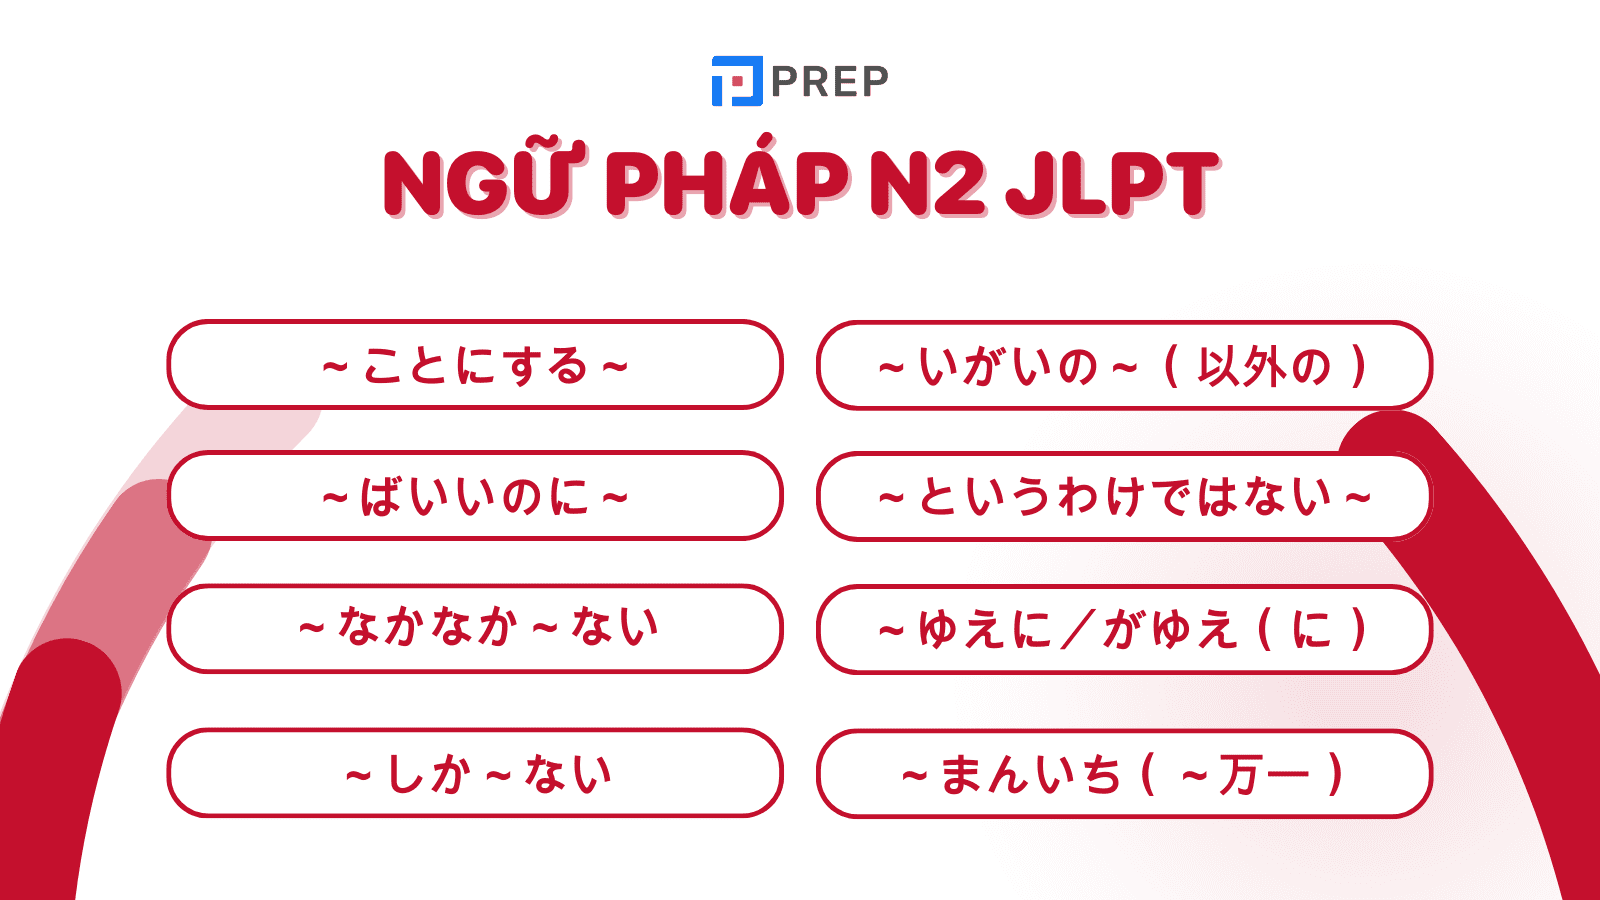 Tổng hợp 125 mẫu ngữ pháp N2 JLPT tiếng Nhật đầy đủ nhất